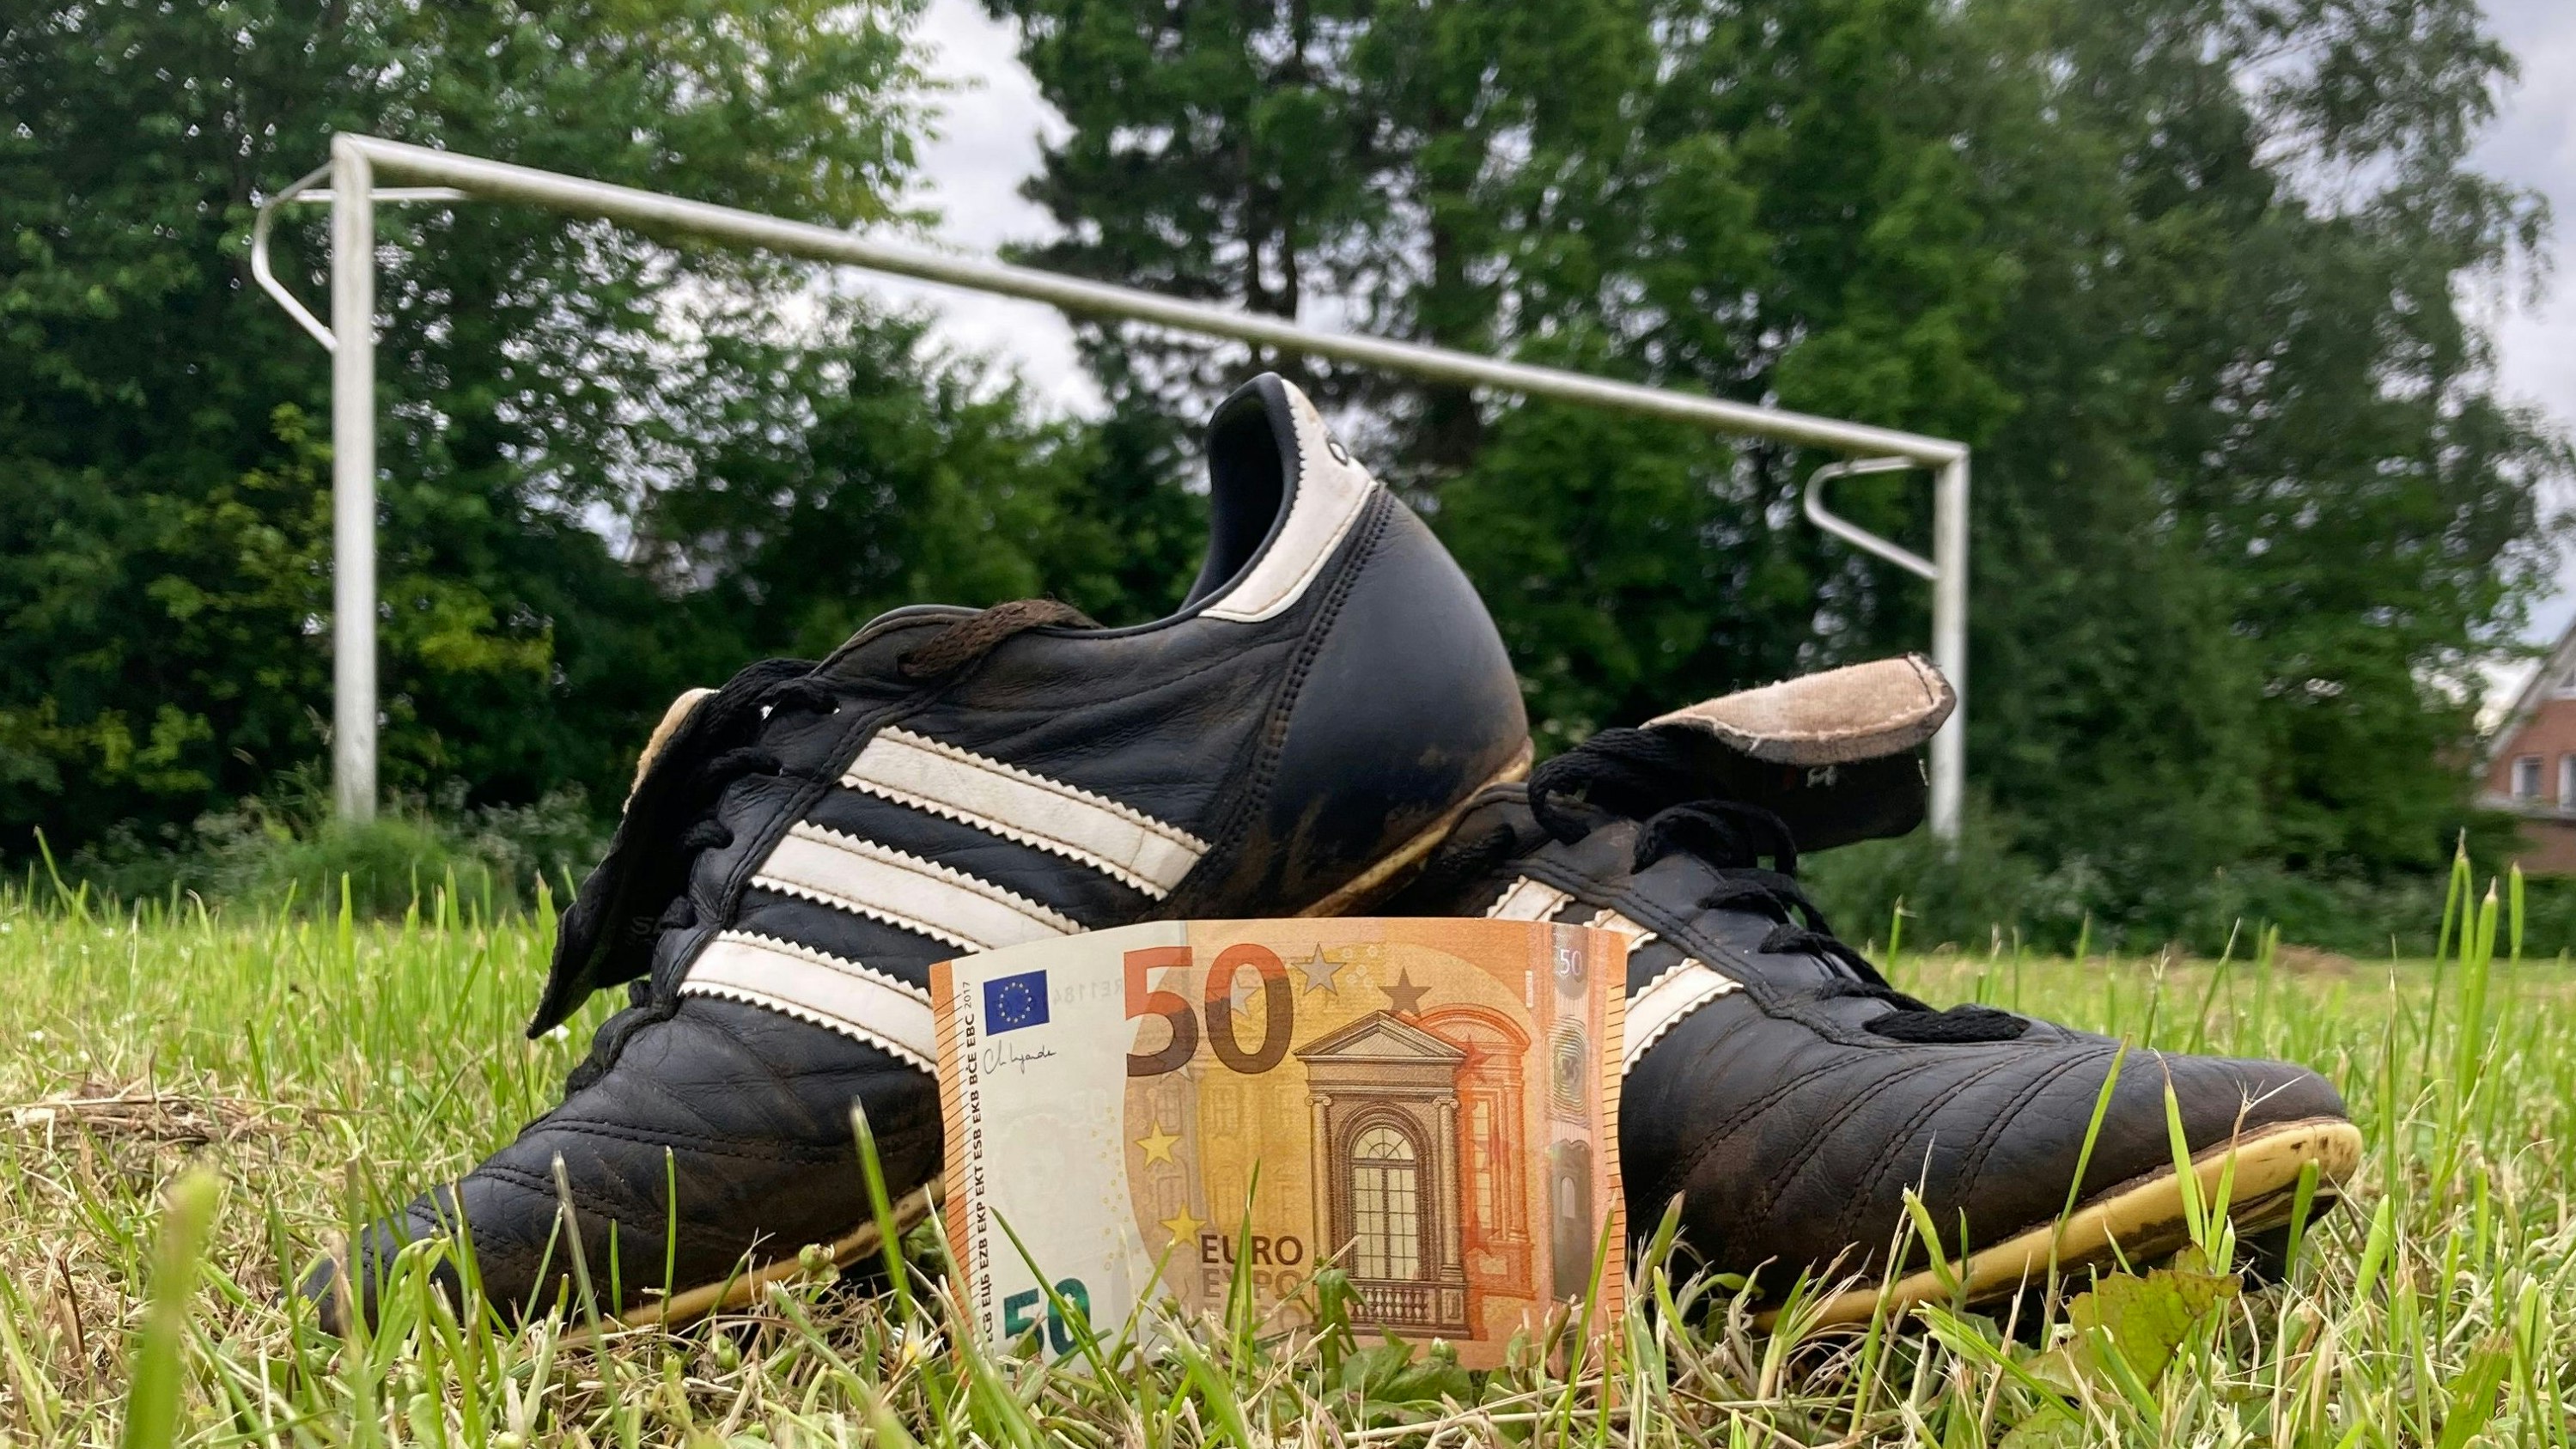 Meistens ist auch Geld im Spiel: Das gilt nicht nur im Amateurfußball des Oldenburger Münsterlandes. Foto: Lünsmann